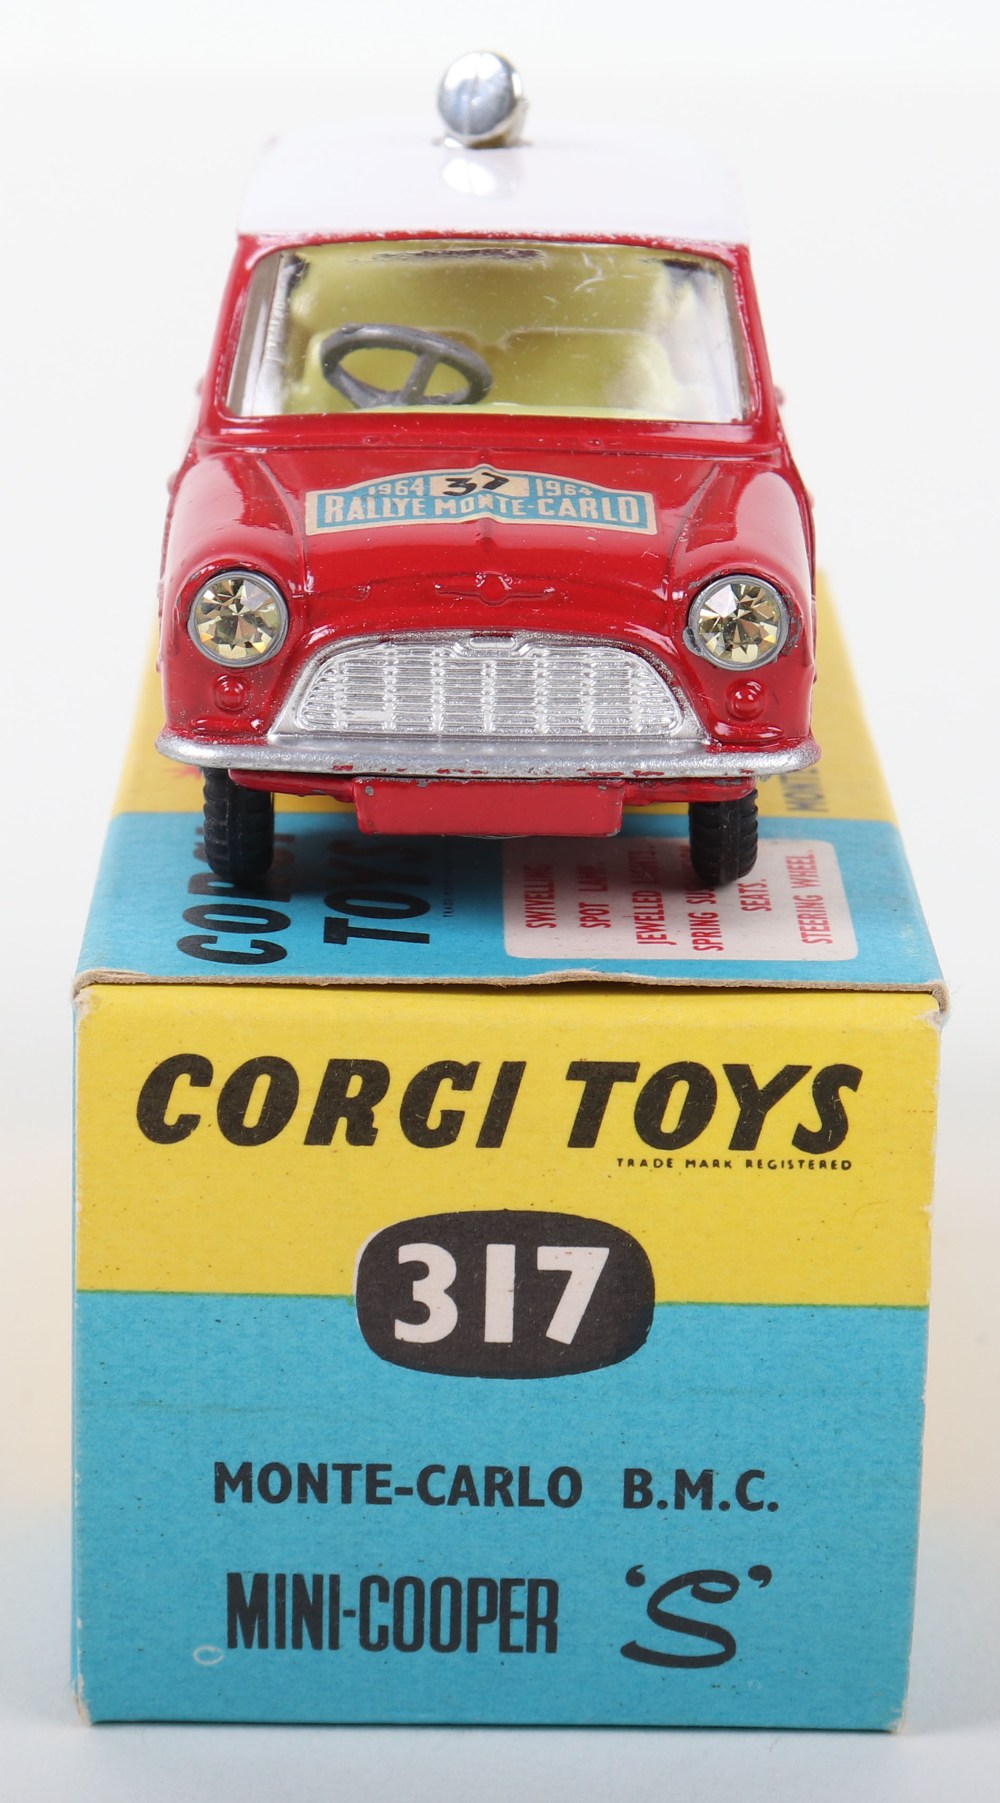 Corgi Toys 317 Monte-Carlo 1964 B.M.C. Mini Copper S - Image 3 of 5